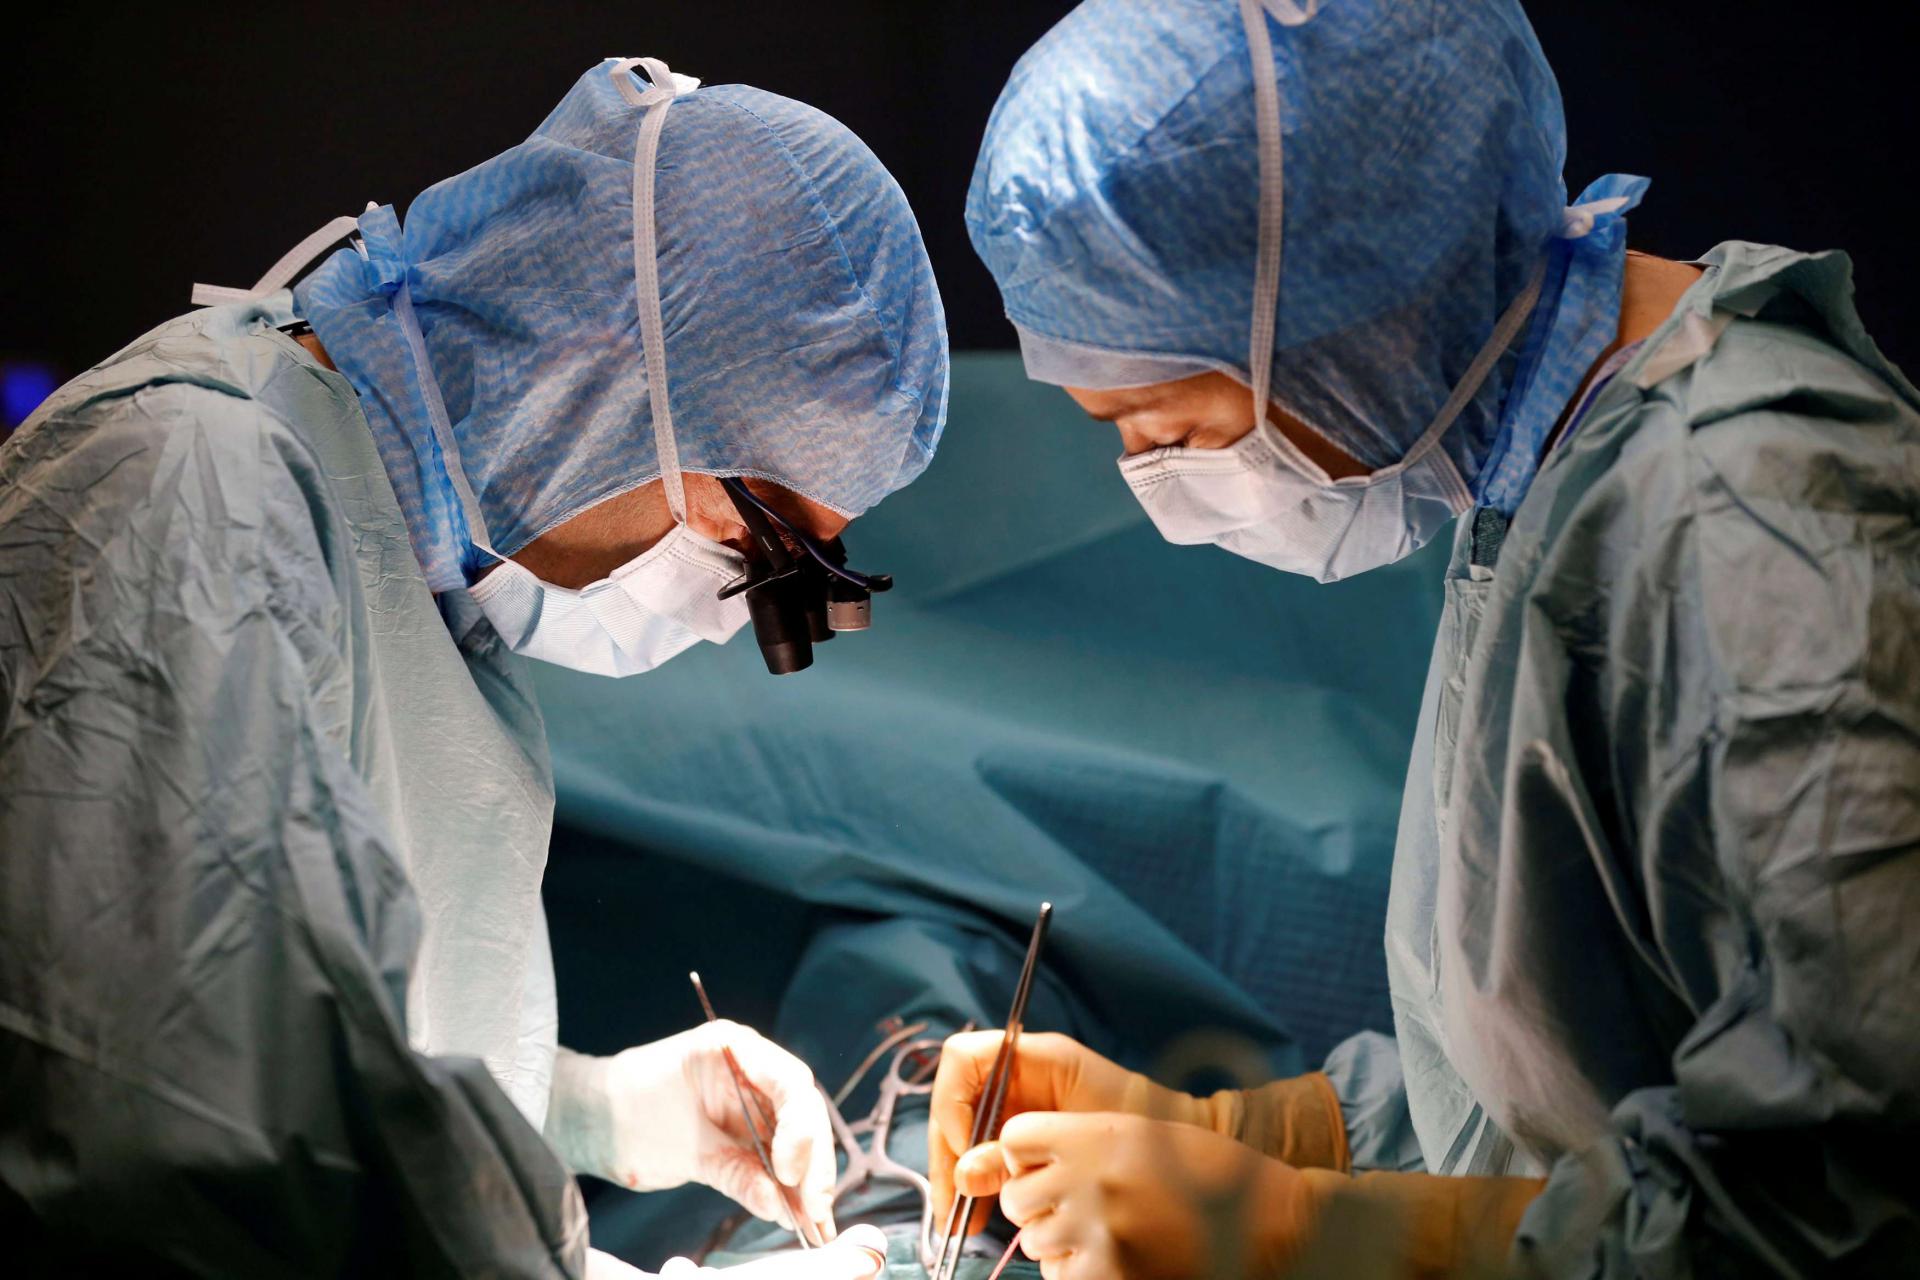 فريق طبي فرنسي يجري عملية جراحية لمريض قلب